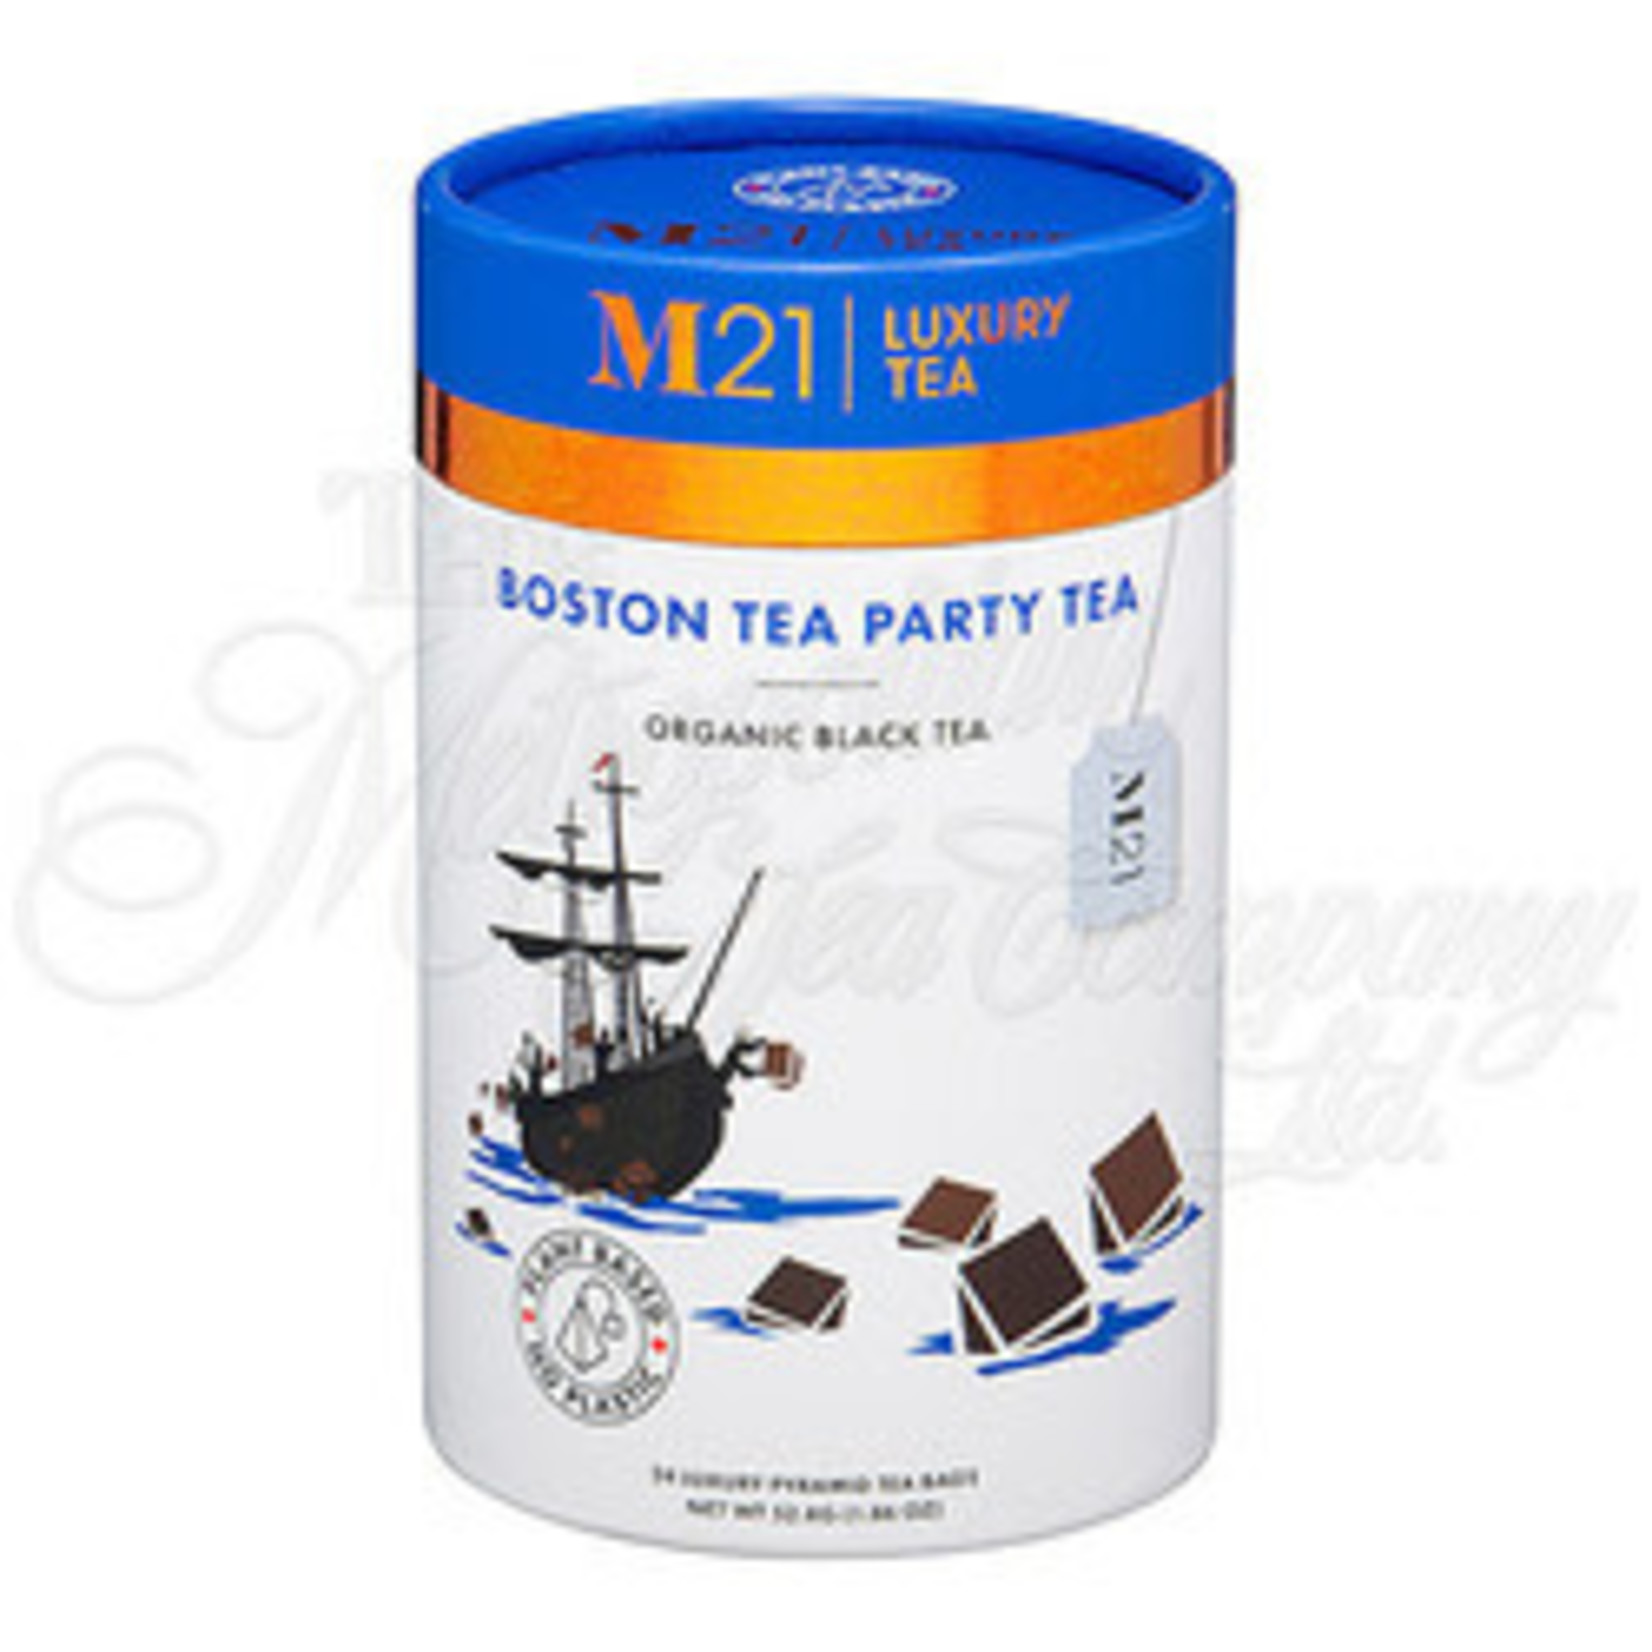 METROPOLITAN TEA METROPOLITAN TEA BOSTON BLACK TEA (M21) 24 BAGS